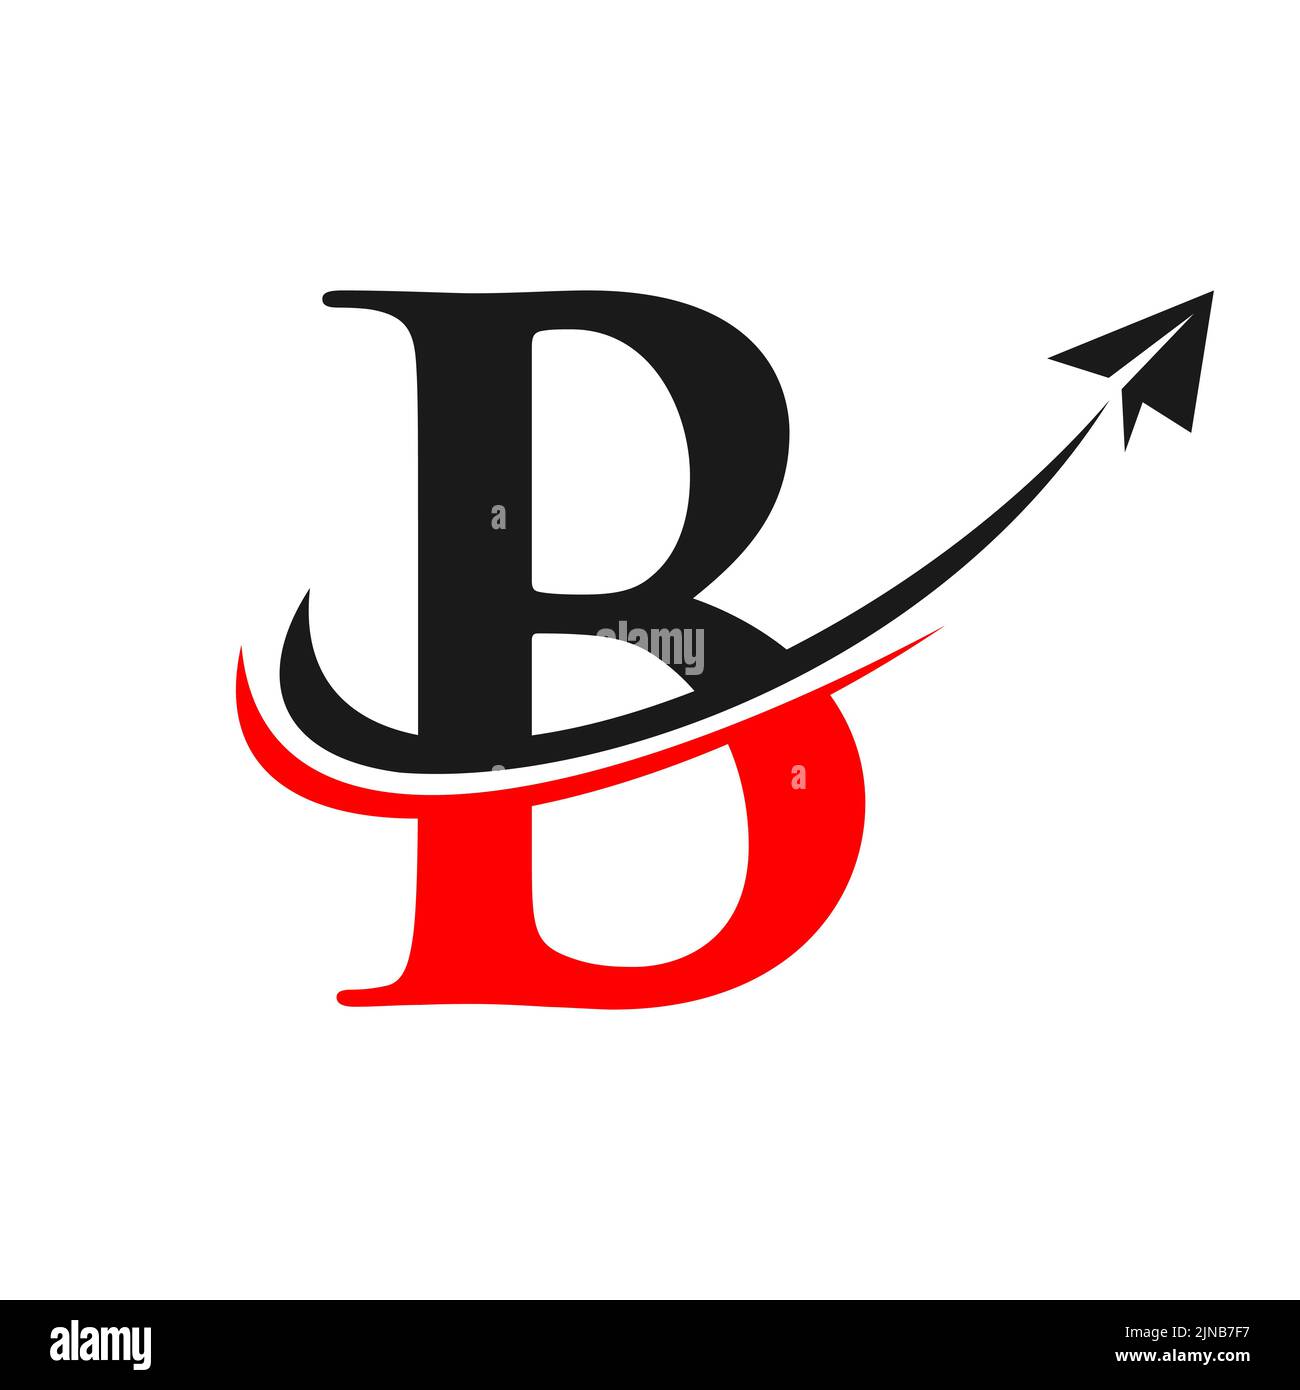 Travel Logo On Letter B Vector Template. Letter B Air Travel Logo Design Stock Vector